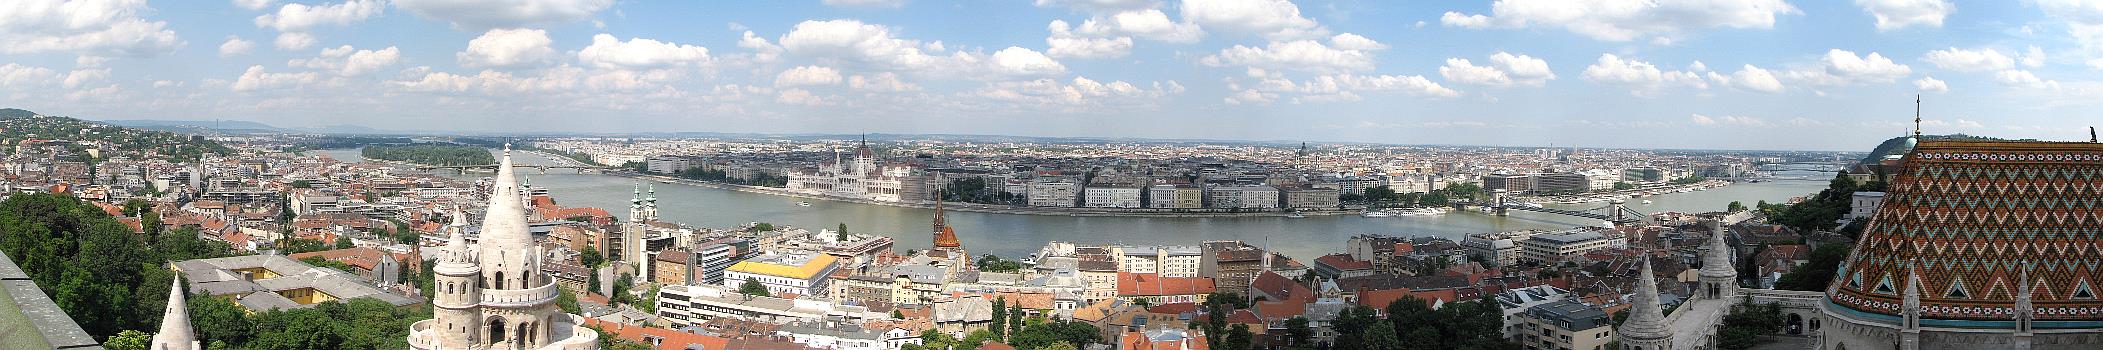 Továbbra is lendületben Budapest turizmusa A KSH augusztus 12-én megjelent kereskedelmi szálláshelyi adatai szerint Budapesten júniusban 354.729 vendég 794.